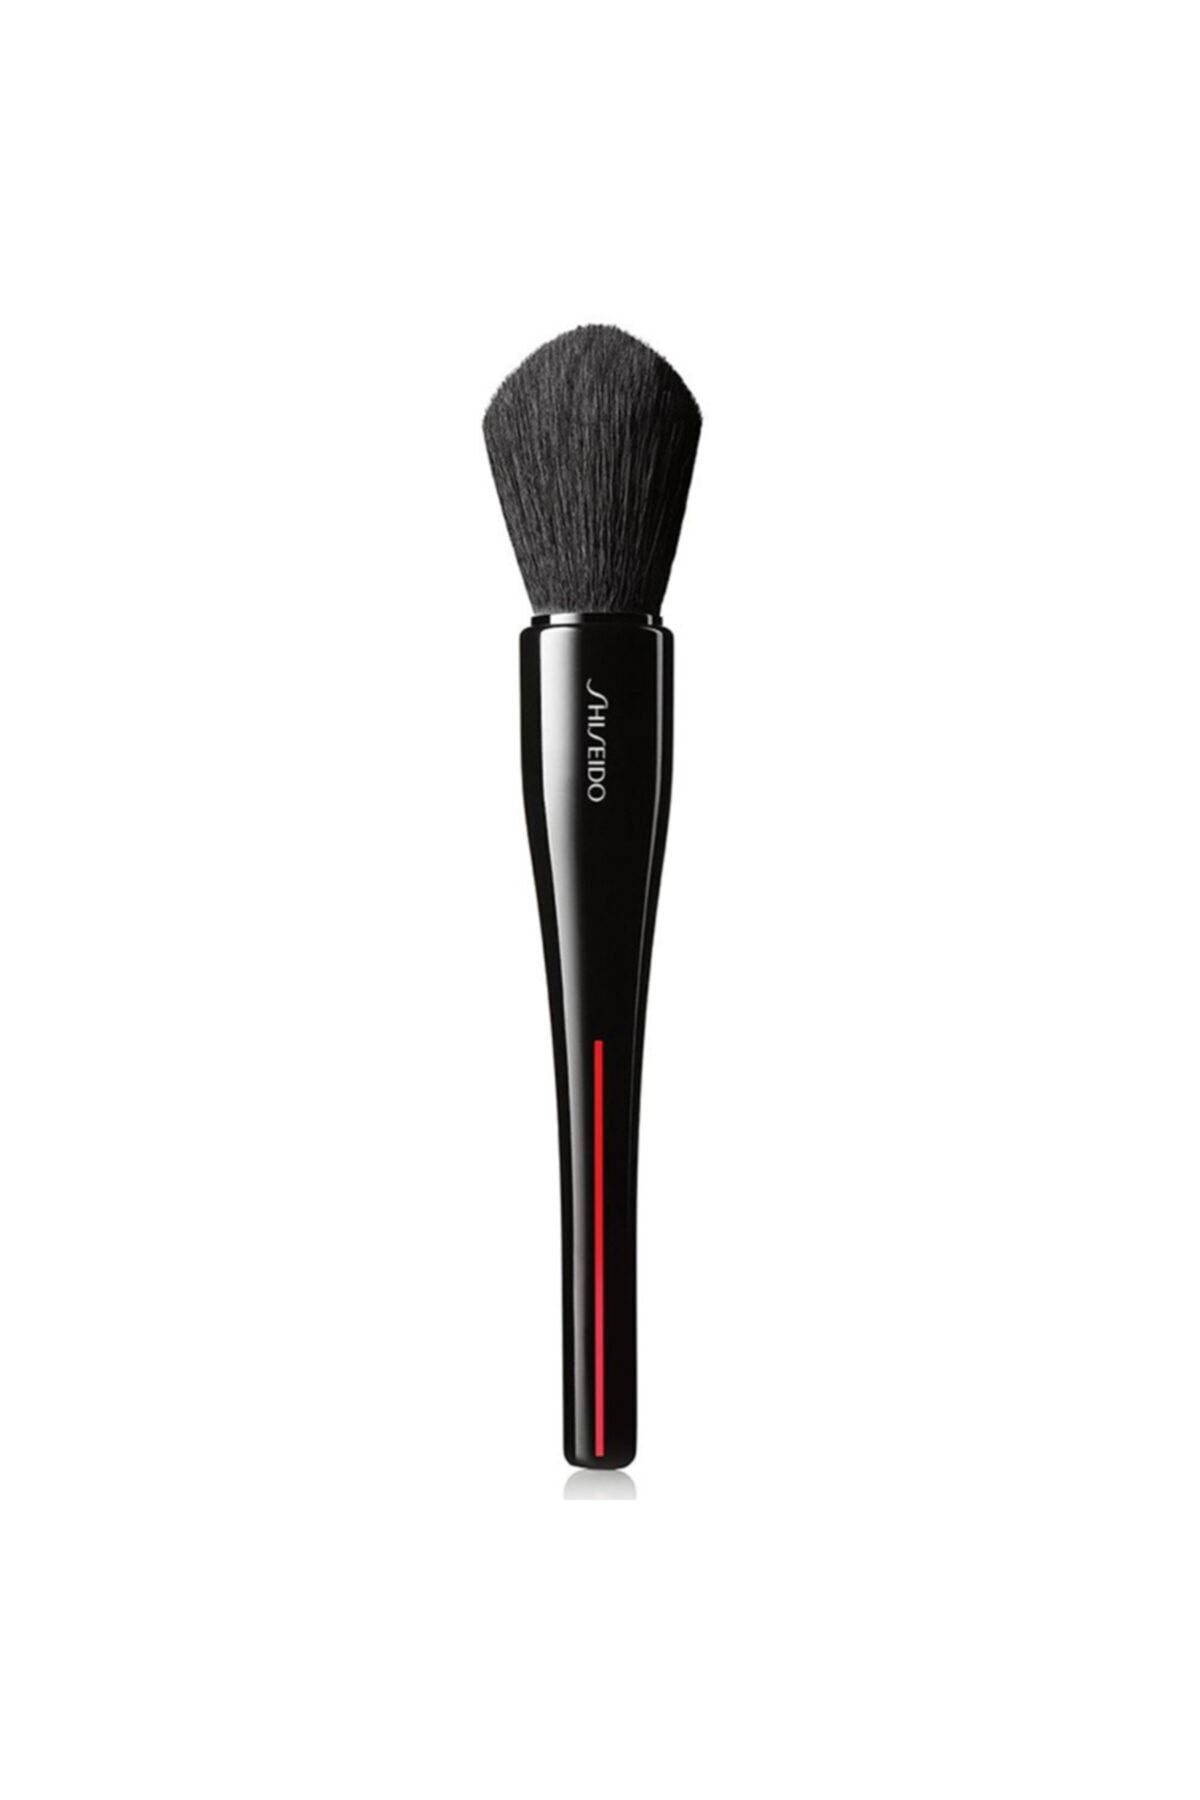 Shiseido Maru Fude Multi Face Brush - Çok fonksiyonlu yüz fırçası